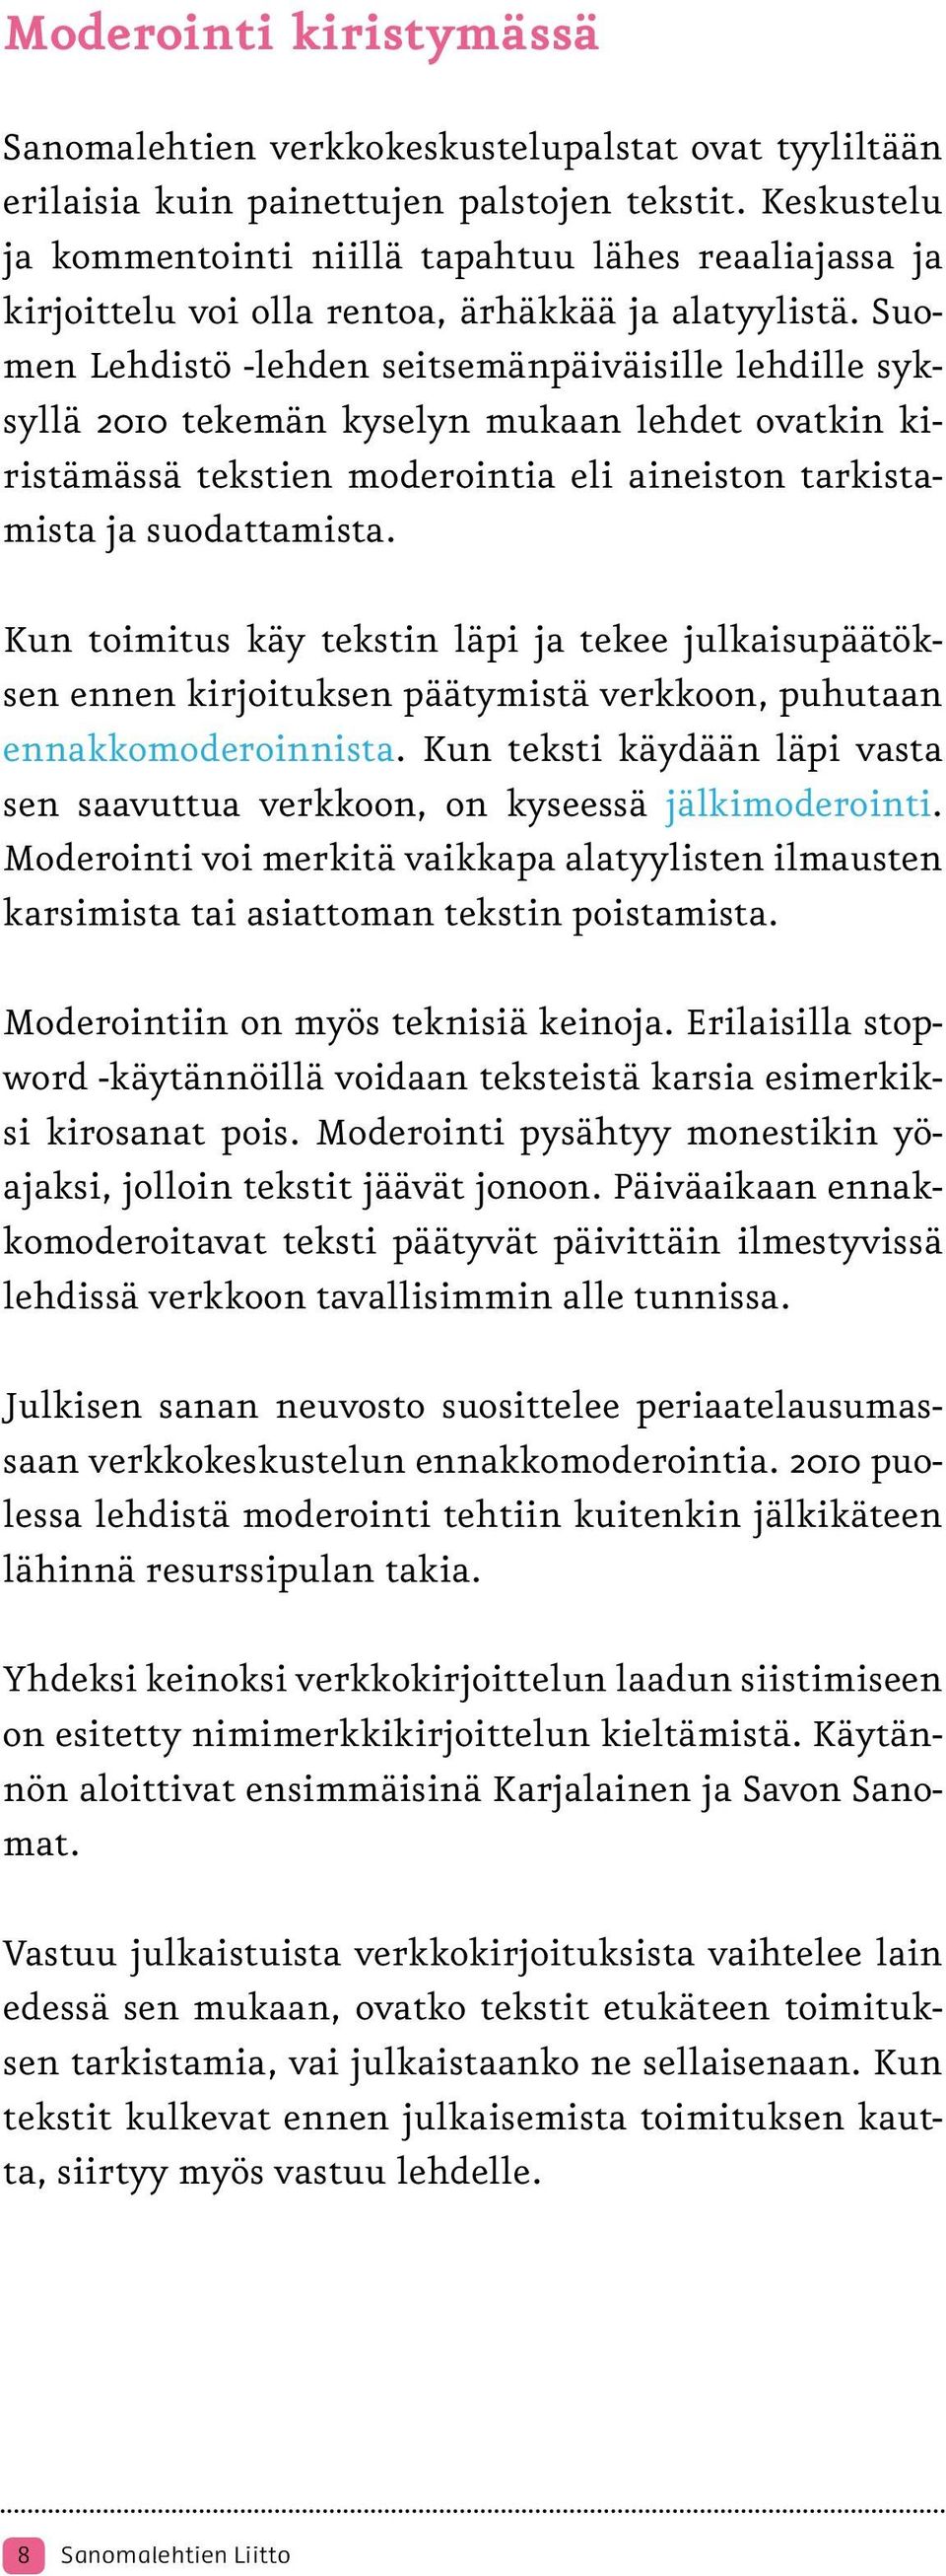 Suomen Lehdistö -lehden seitsemänpäiväisille lehdille syksyllä 2010 tekemän kyselyn mukaan lehdet ovatkin kiristämässä tekstien moderointia eli aineiston tarkistamista ja suodattamista.